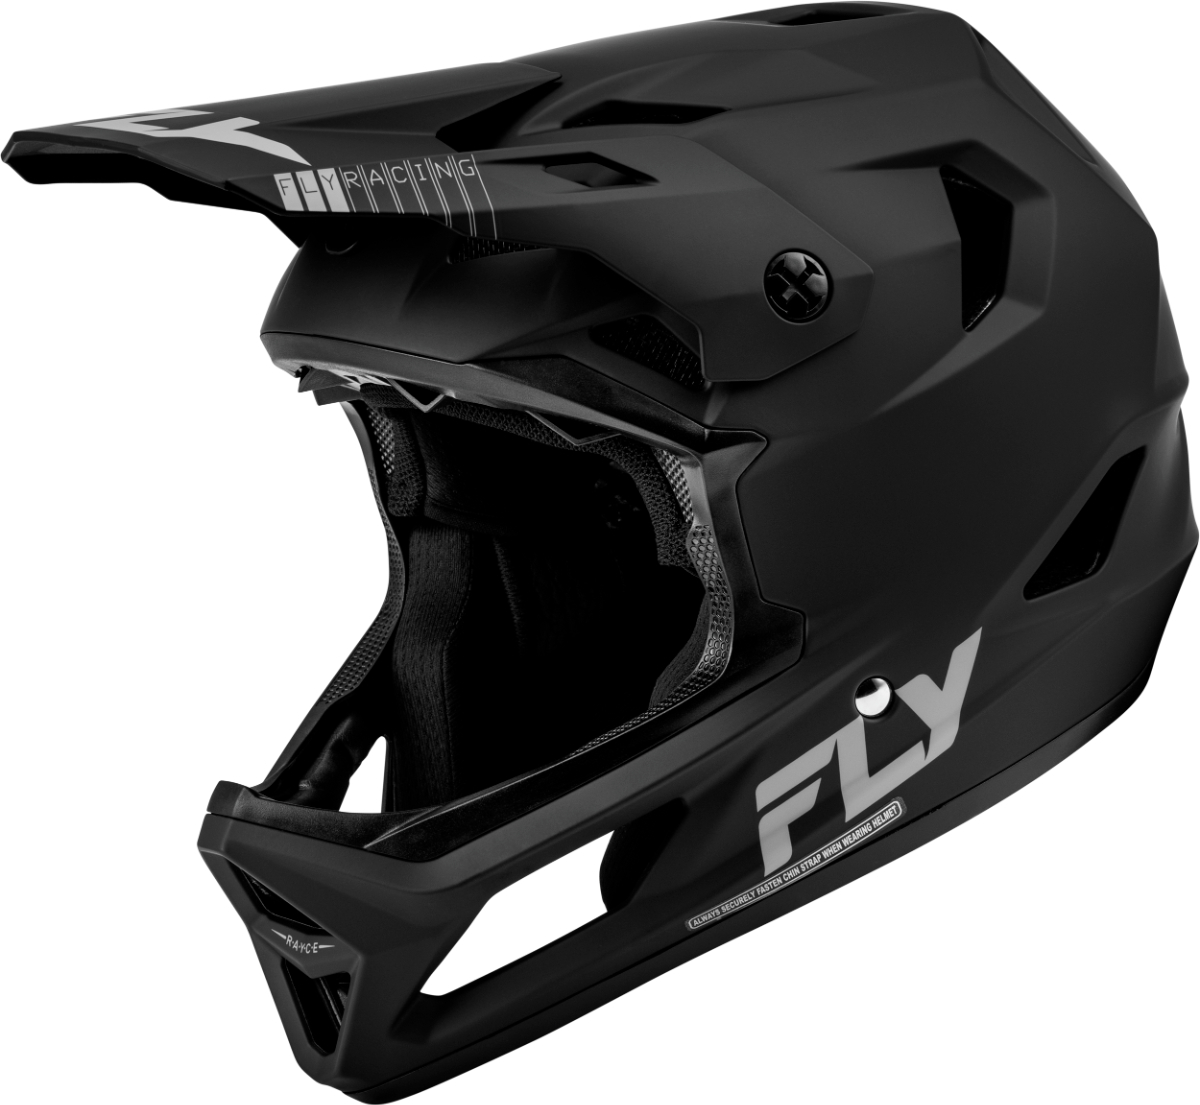 Mサイズ FLY RACING フライ レーシング 自転車/BMX用 RAYCE ヘルメット マットブラック 黒 MD